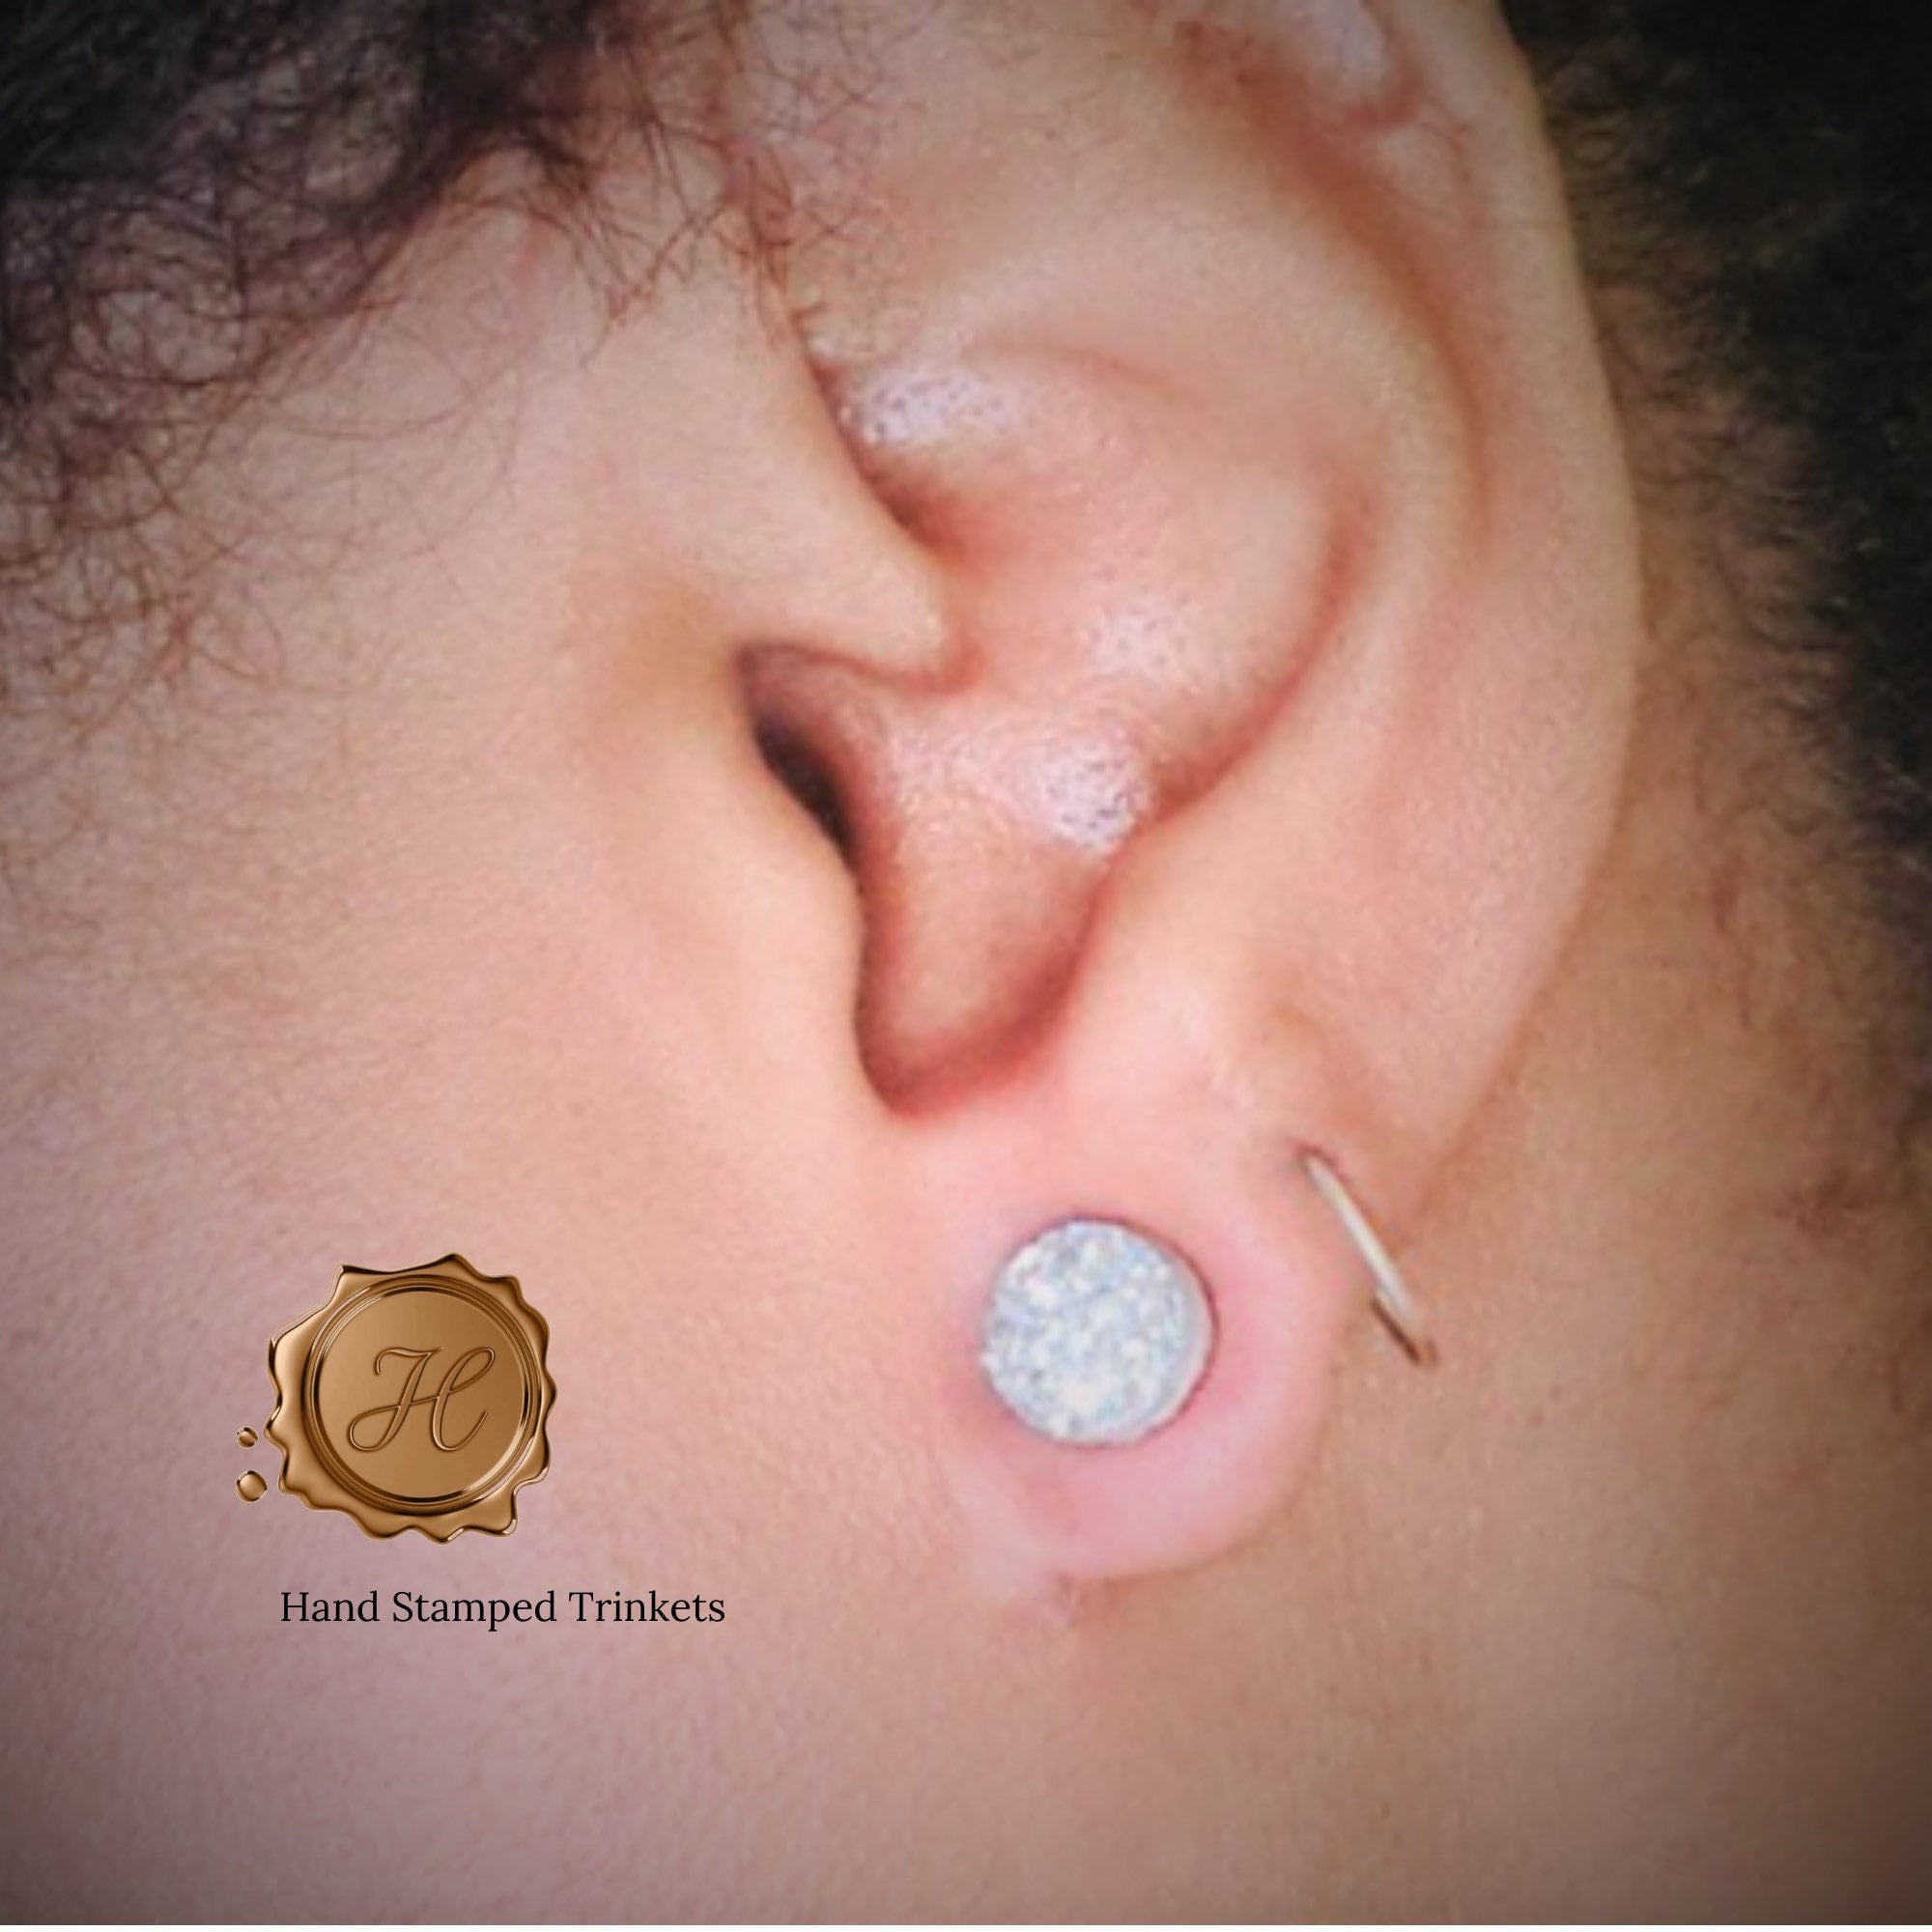 Midnight Blue Druzy Earrings - 10mm